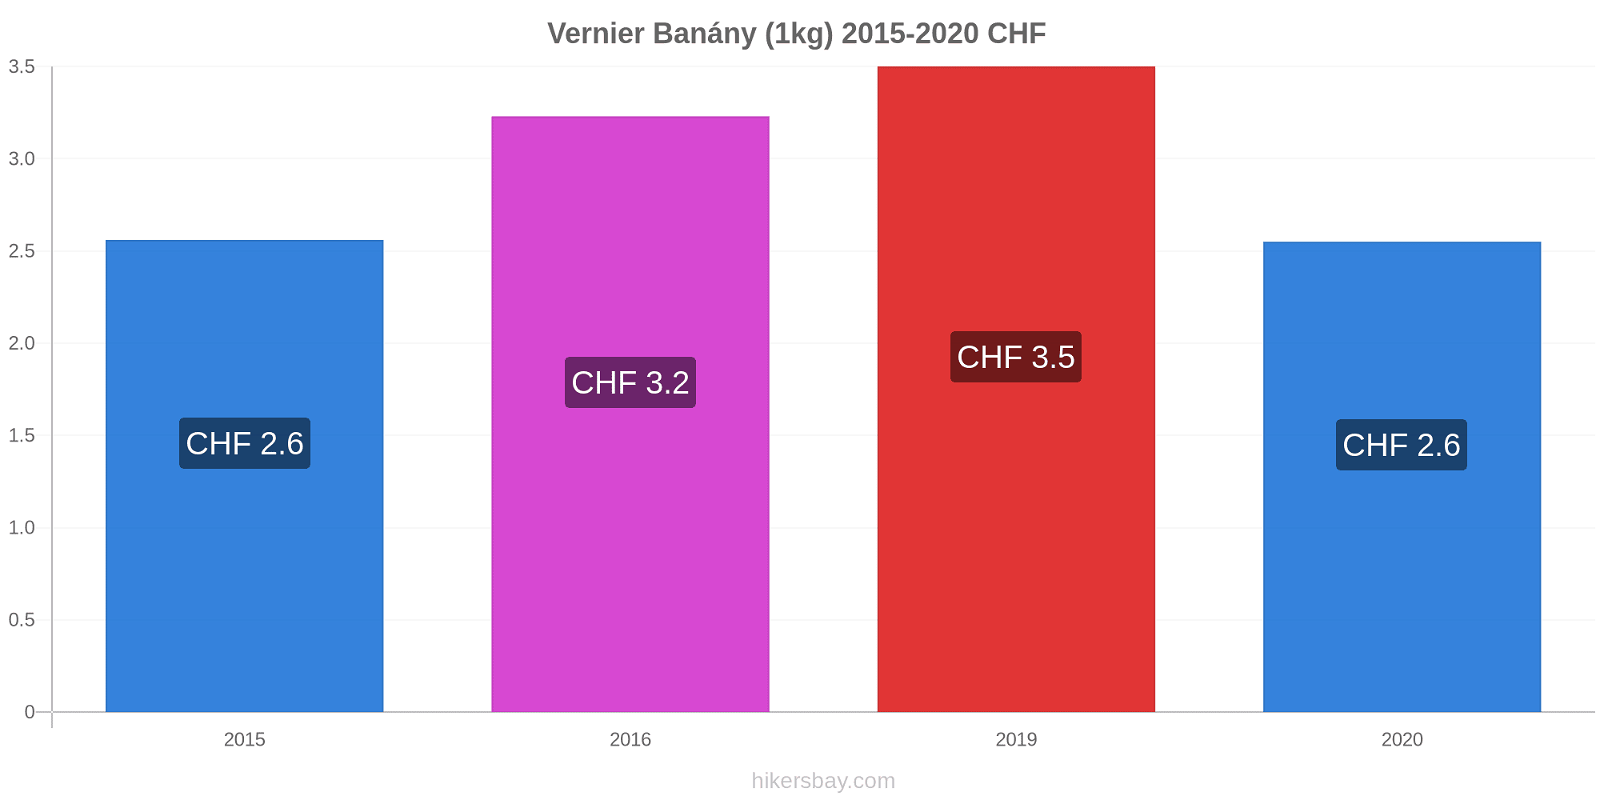 Vernier změny cen Banány (1kg) hikersbay.com